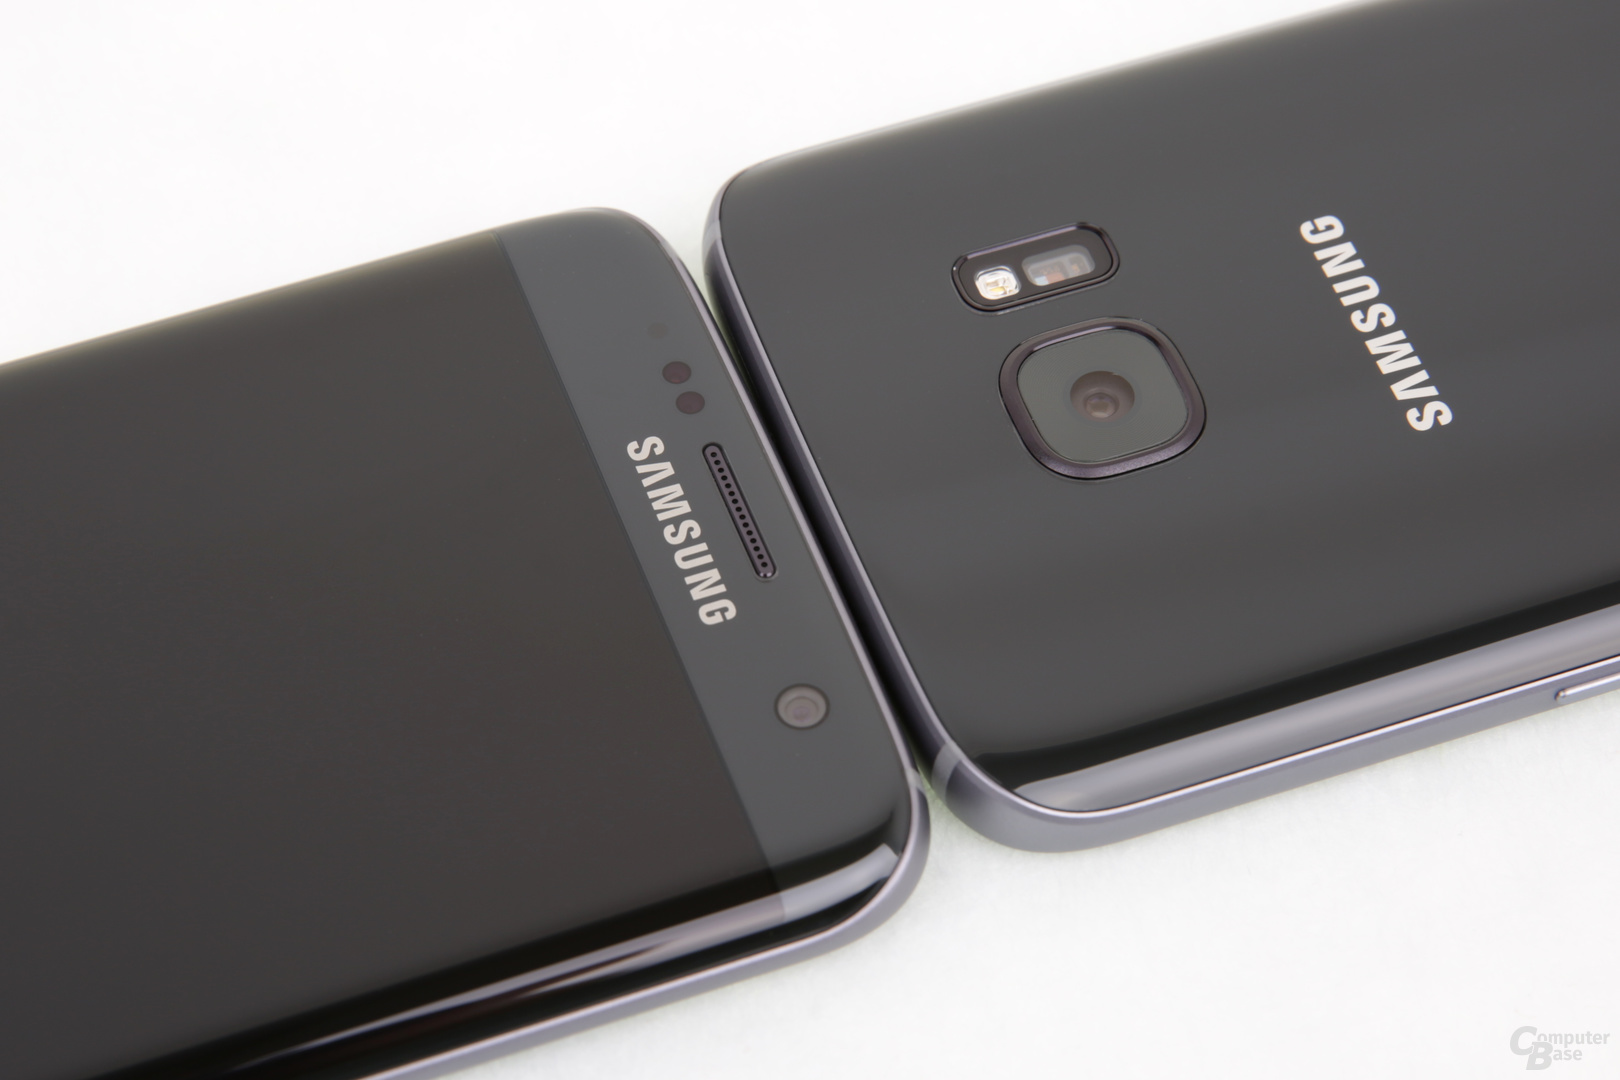 Das Galaxy S7 edge ist ein gespiegeltes Galaxy S7